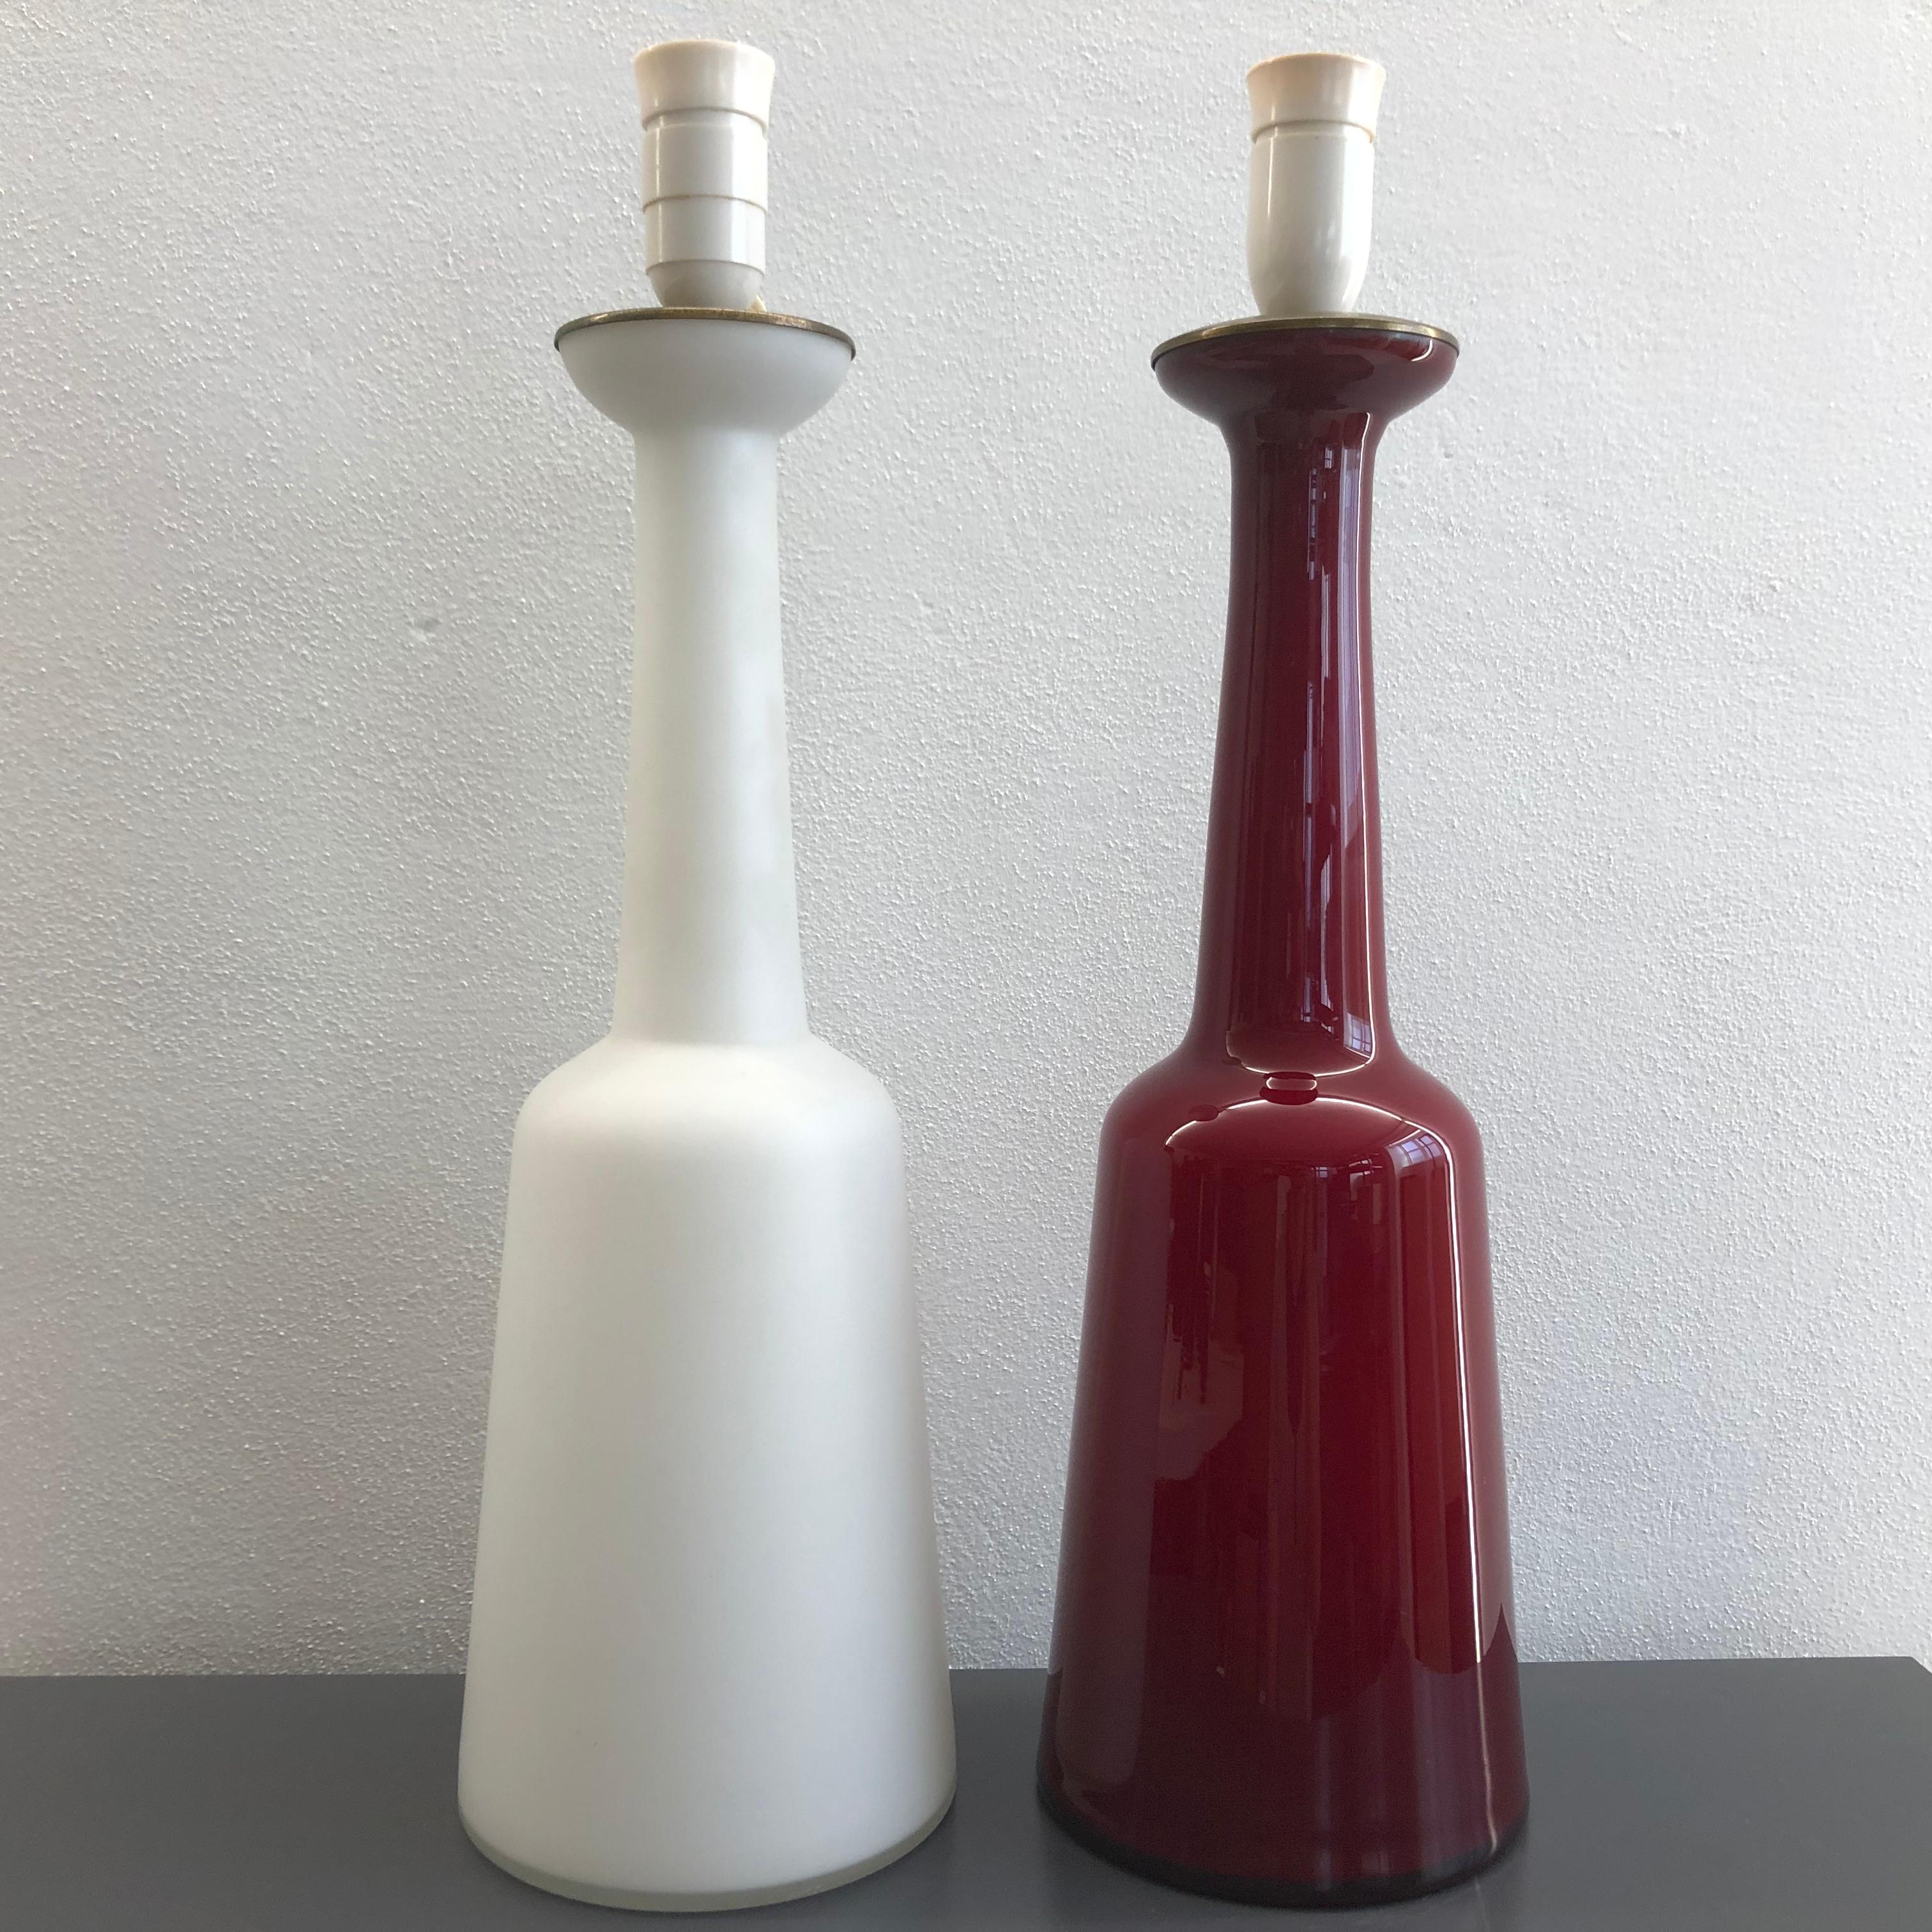 Set of Lamps by Bent Nordsted for Holmegaard (Moderne)